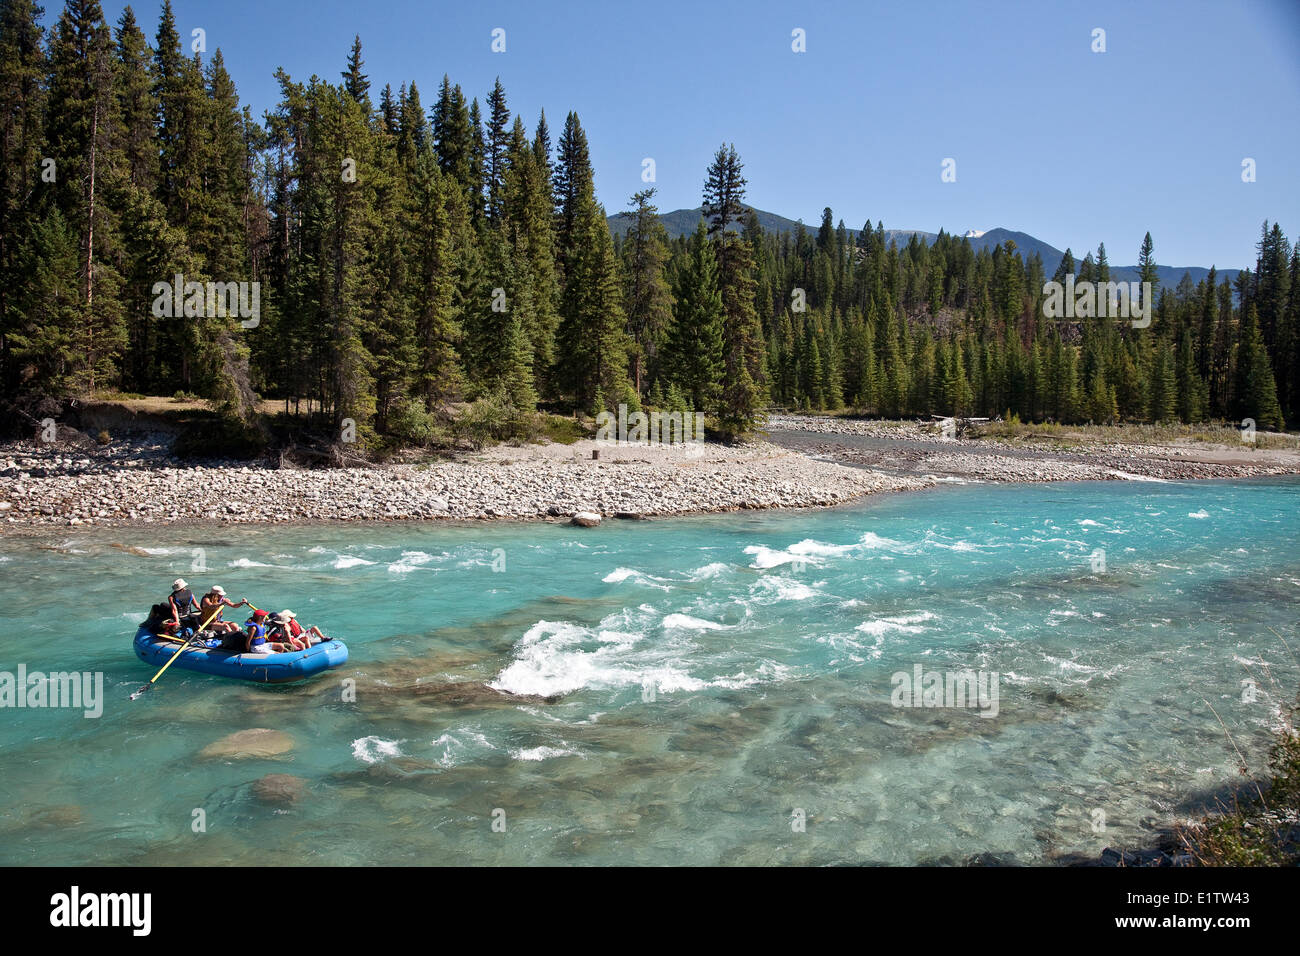 Family enjoy raft trip on Kootenay River, Kootenay National Park, BC, Canada. Stock Photo